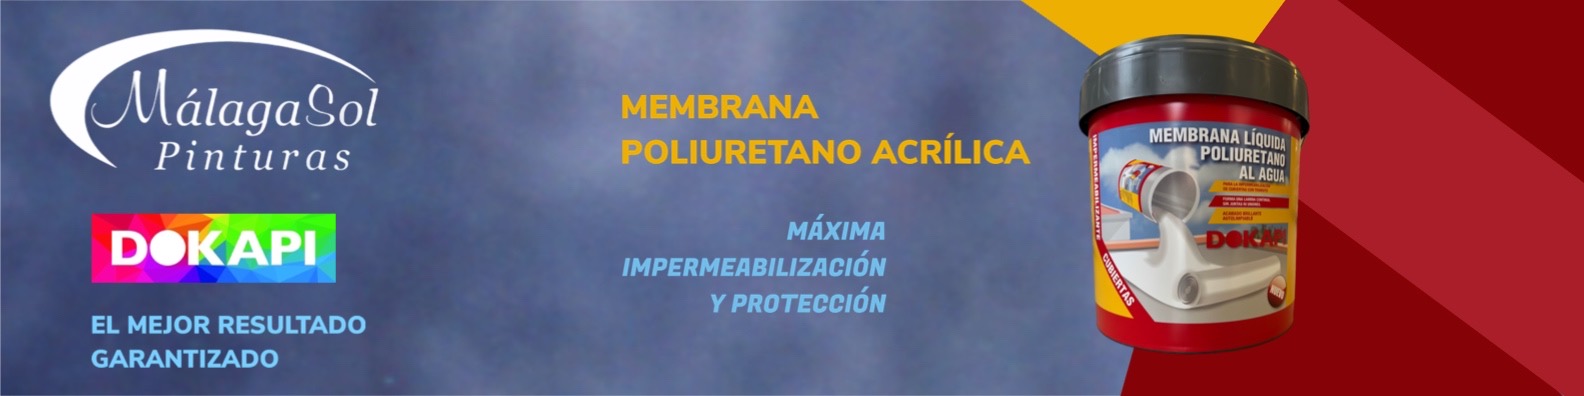 Dokapi Membrana Poliuretano al Agua - Pinturas Málaga Sol